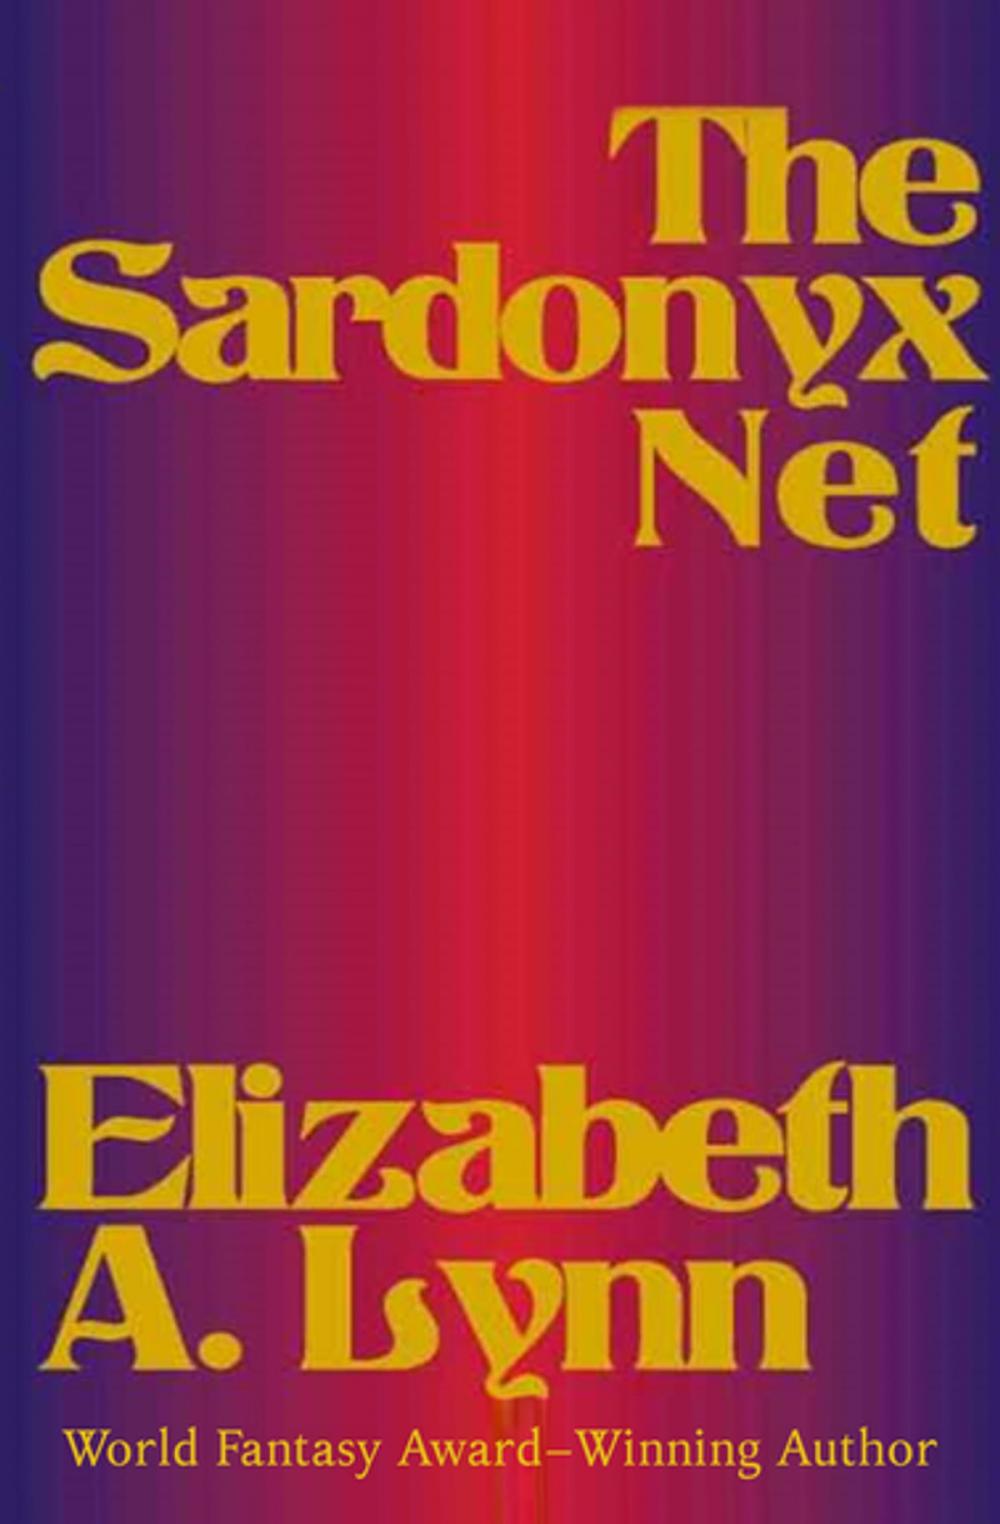 Big bigCover of The Sardonyx Net